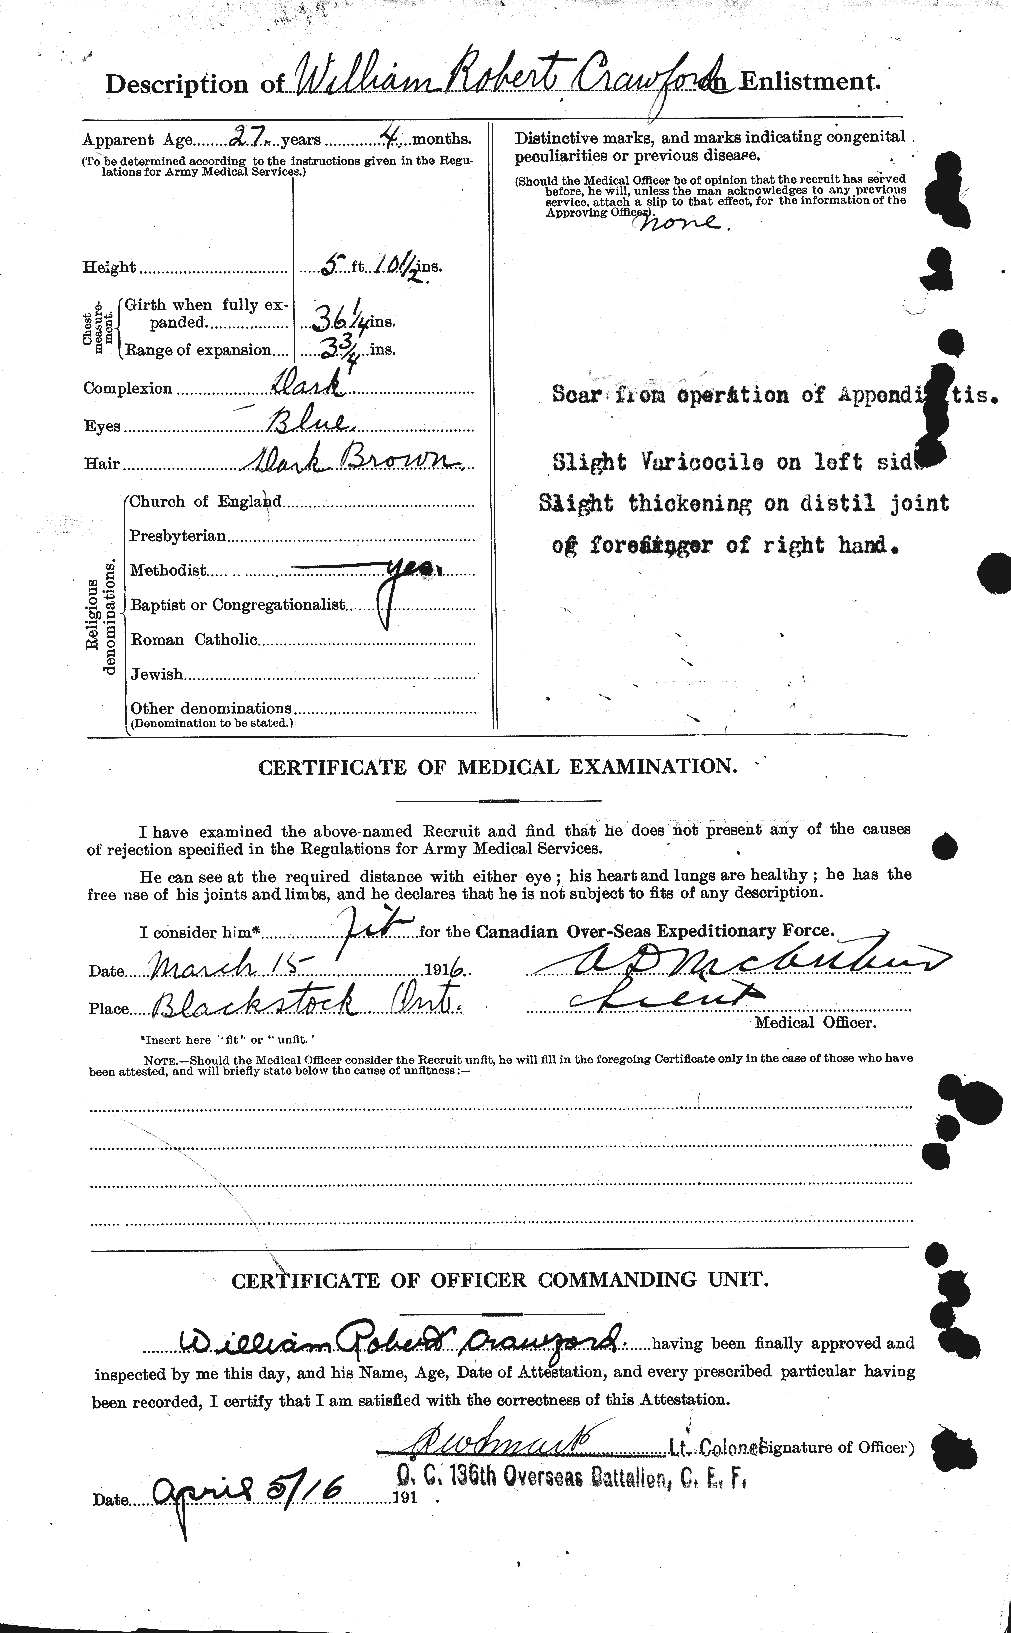 Dossiers du Personnel de la Première Guerre mondiale - CEC 060686b